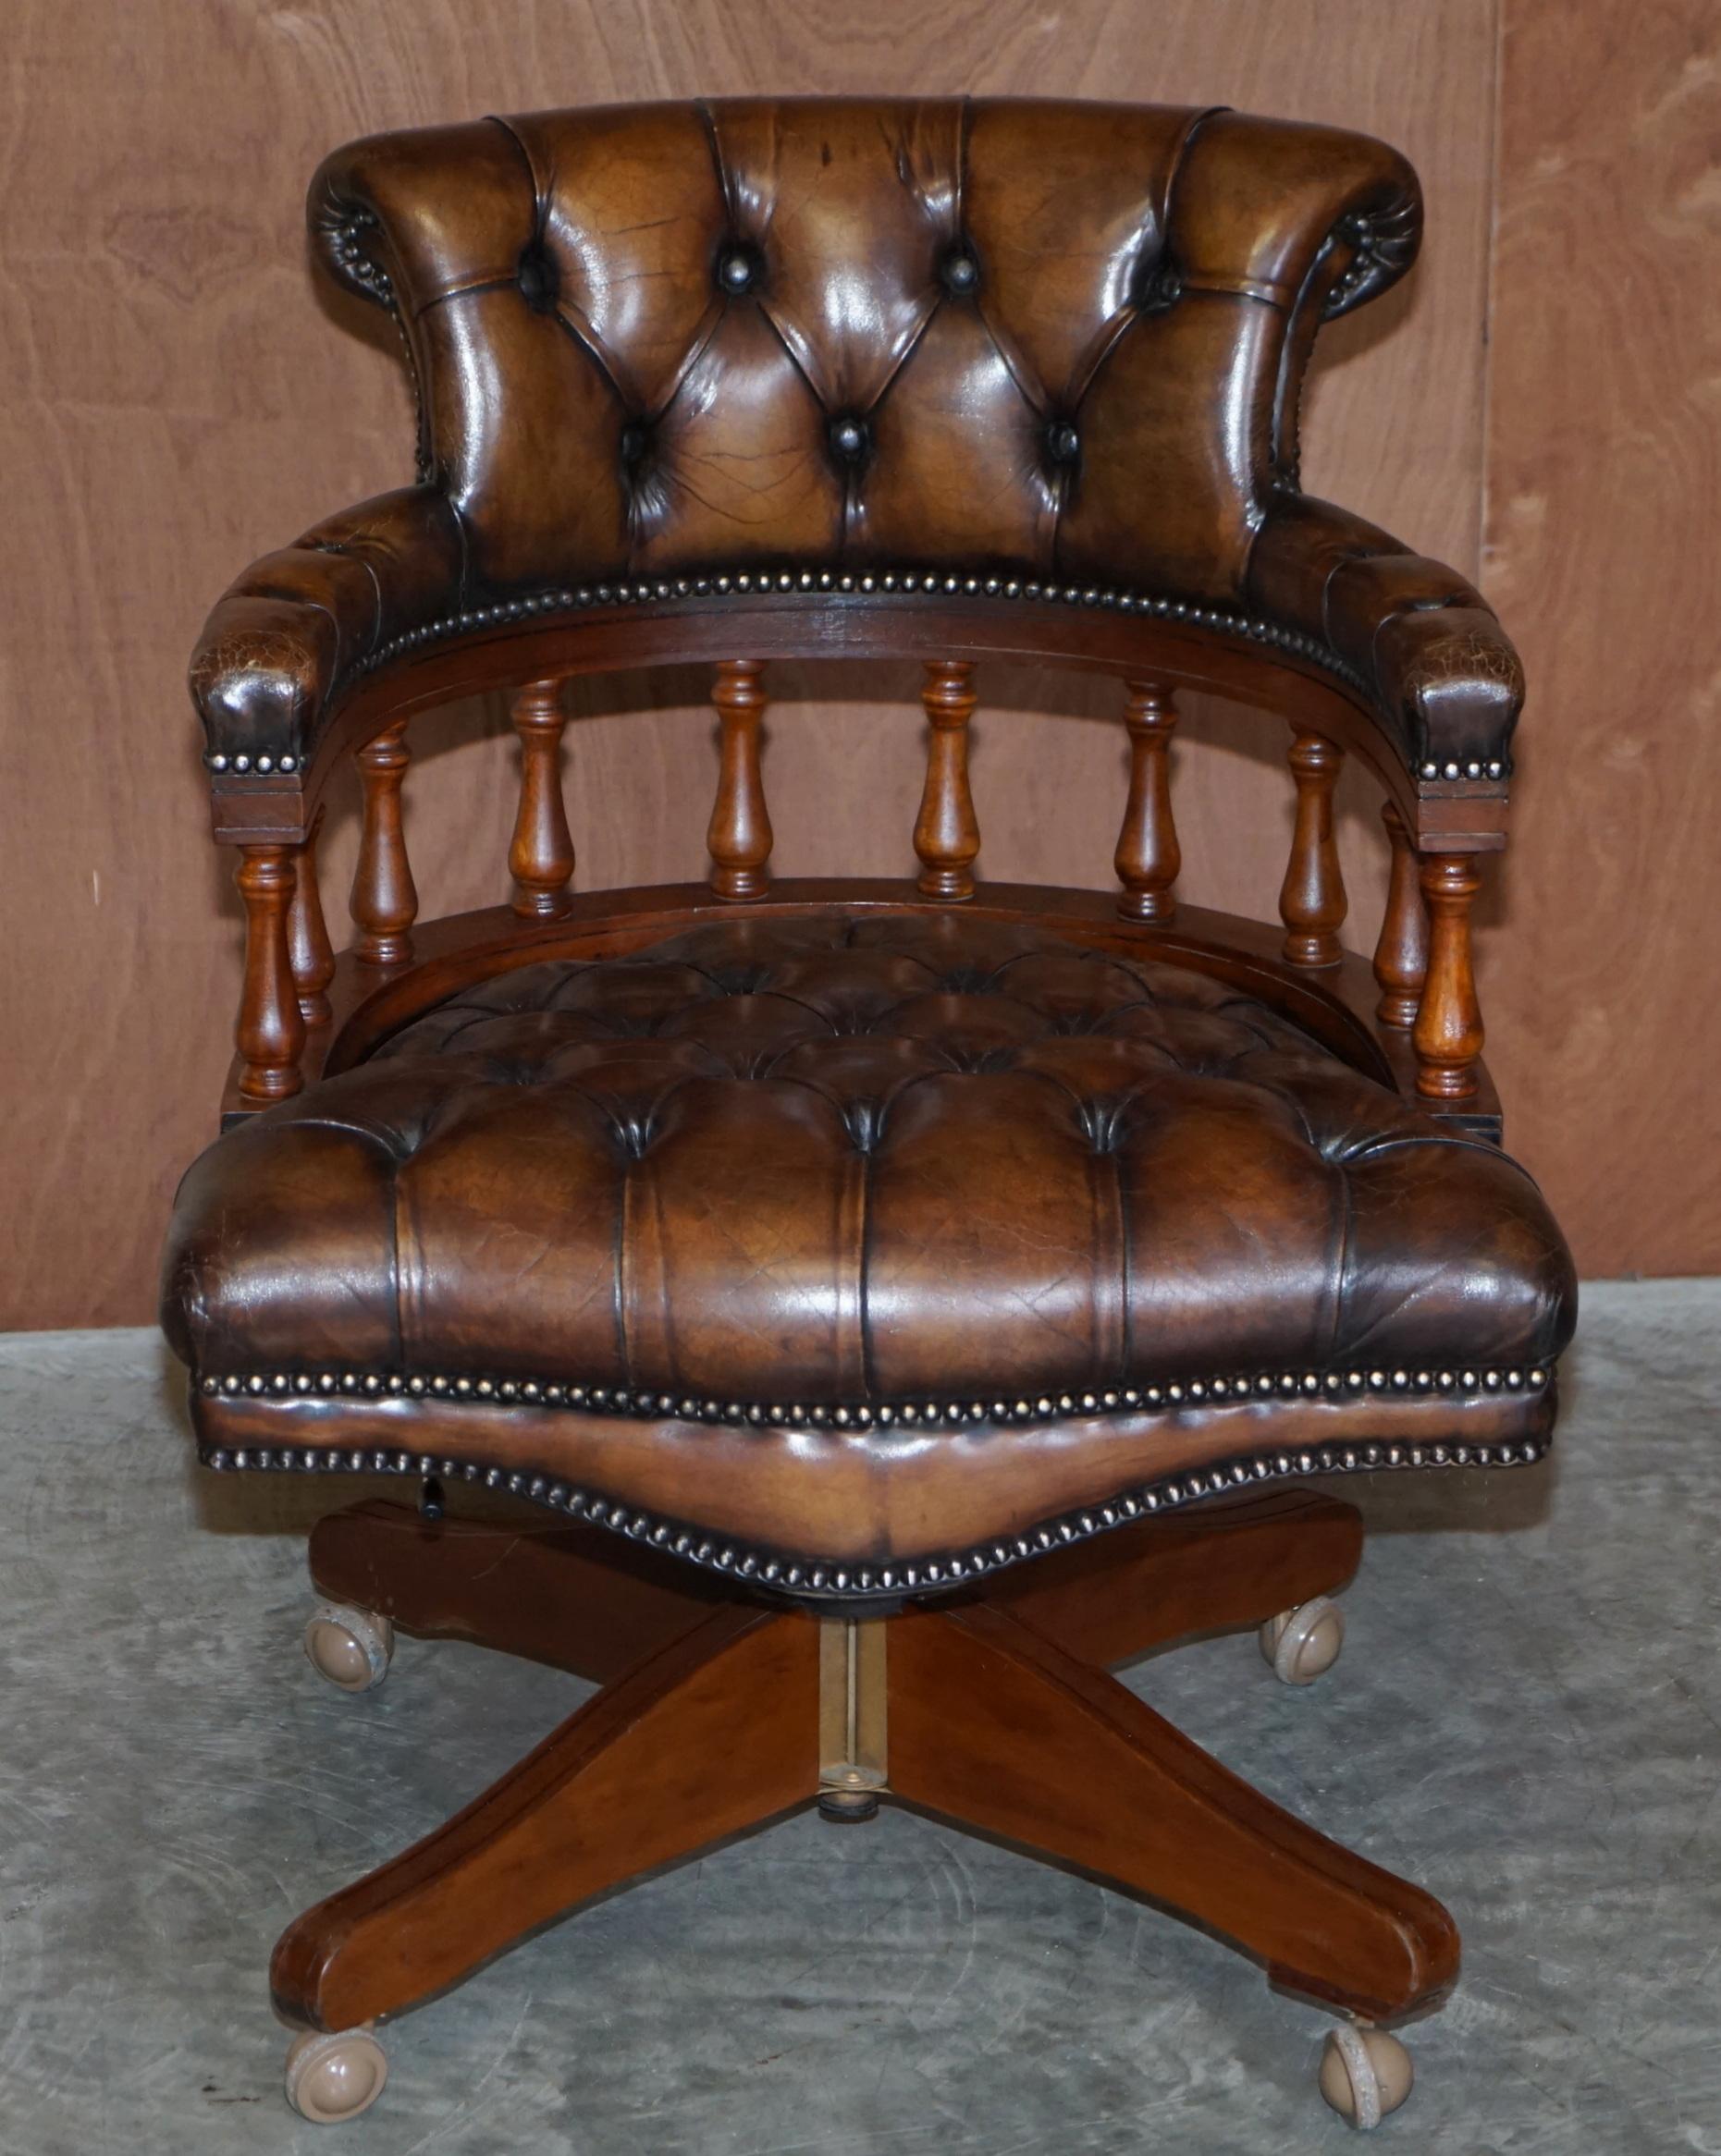 Nous sommes ravis d'offrir à la vente ce charmant fauteuil de directeur en cuir marron Chesterfield, entièrement restauré et encadré en chêne.

Une très belle chaise de directeur, bien faite et confortable, je n'en ai jamais vu une avec un cadre